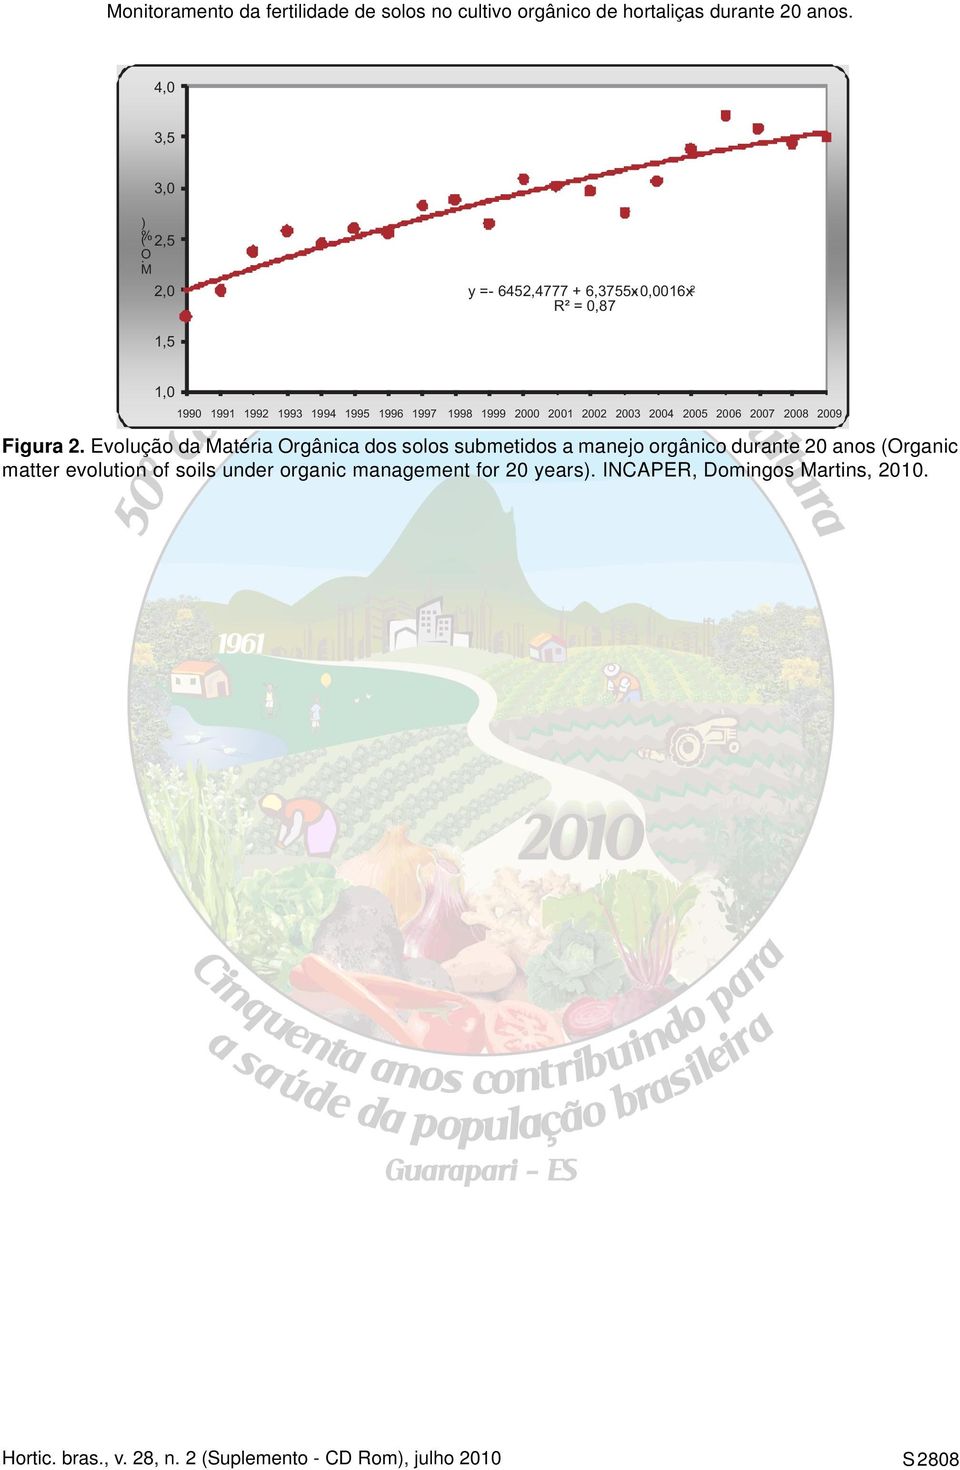 Evolução da Matéria Orgânica dos solos submetidos a manejo orgânico durante 20 anos